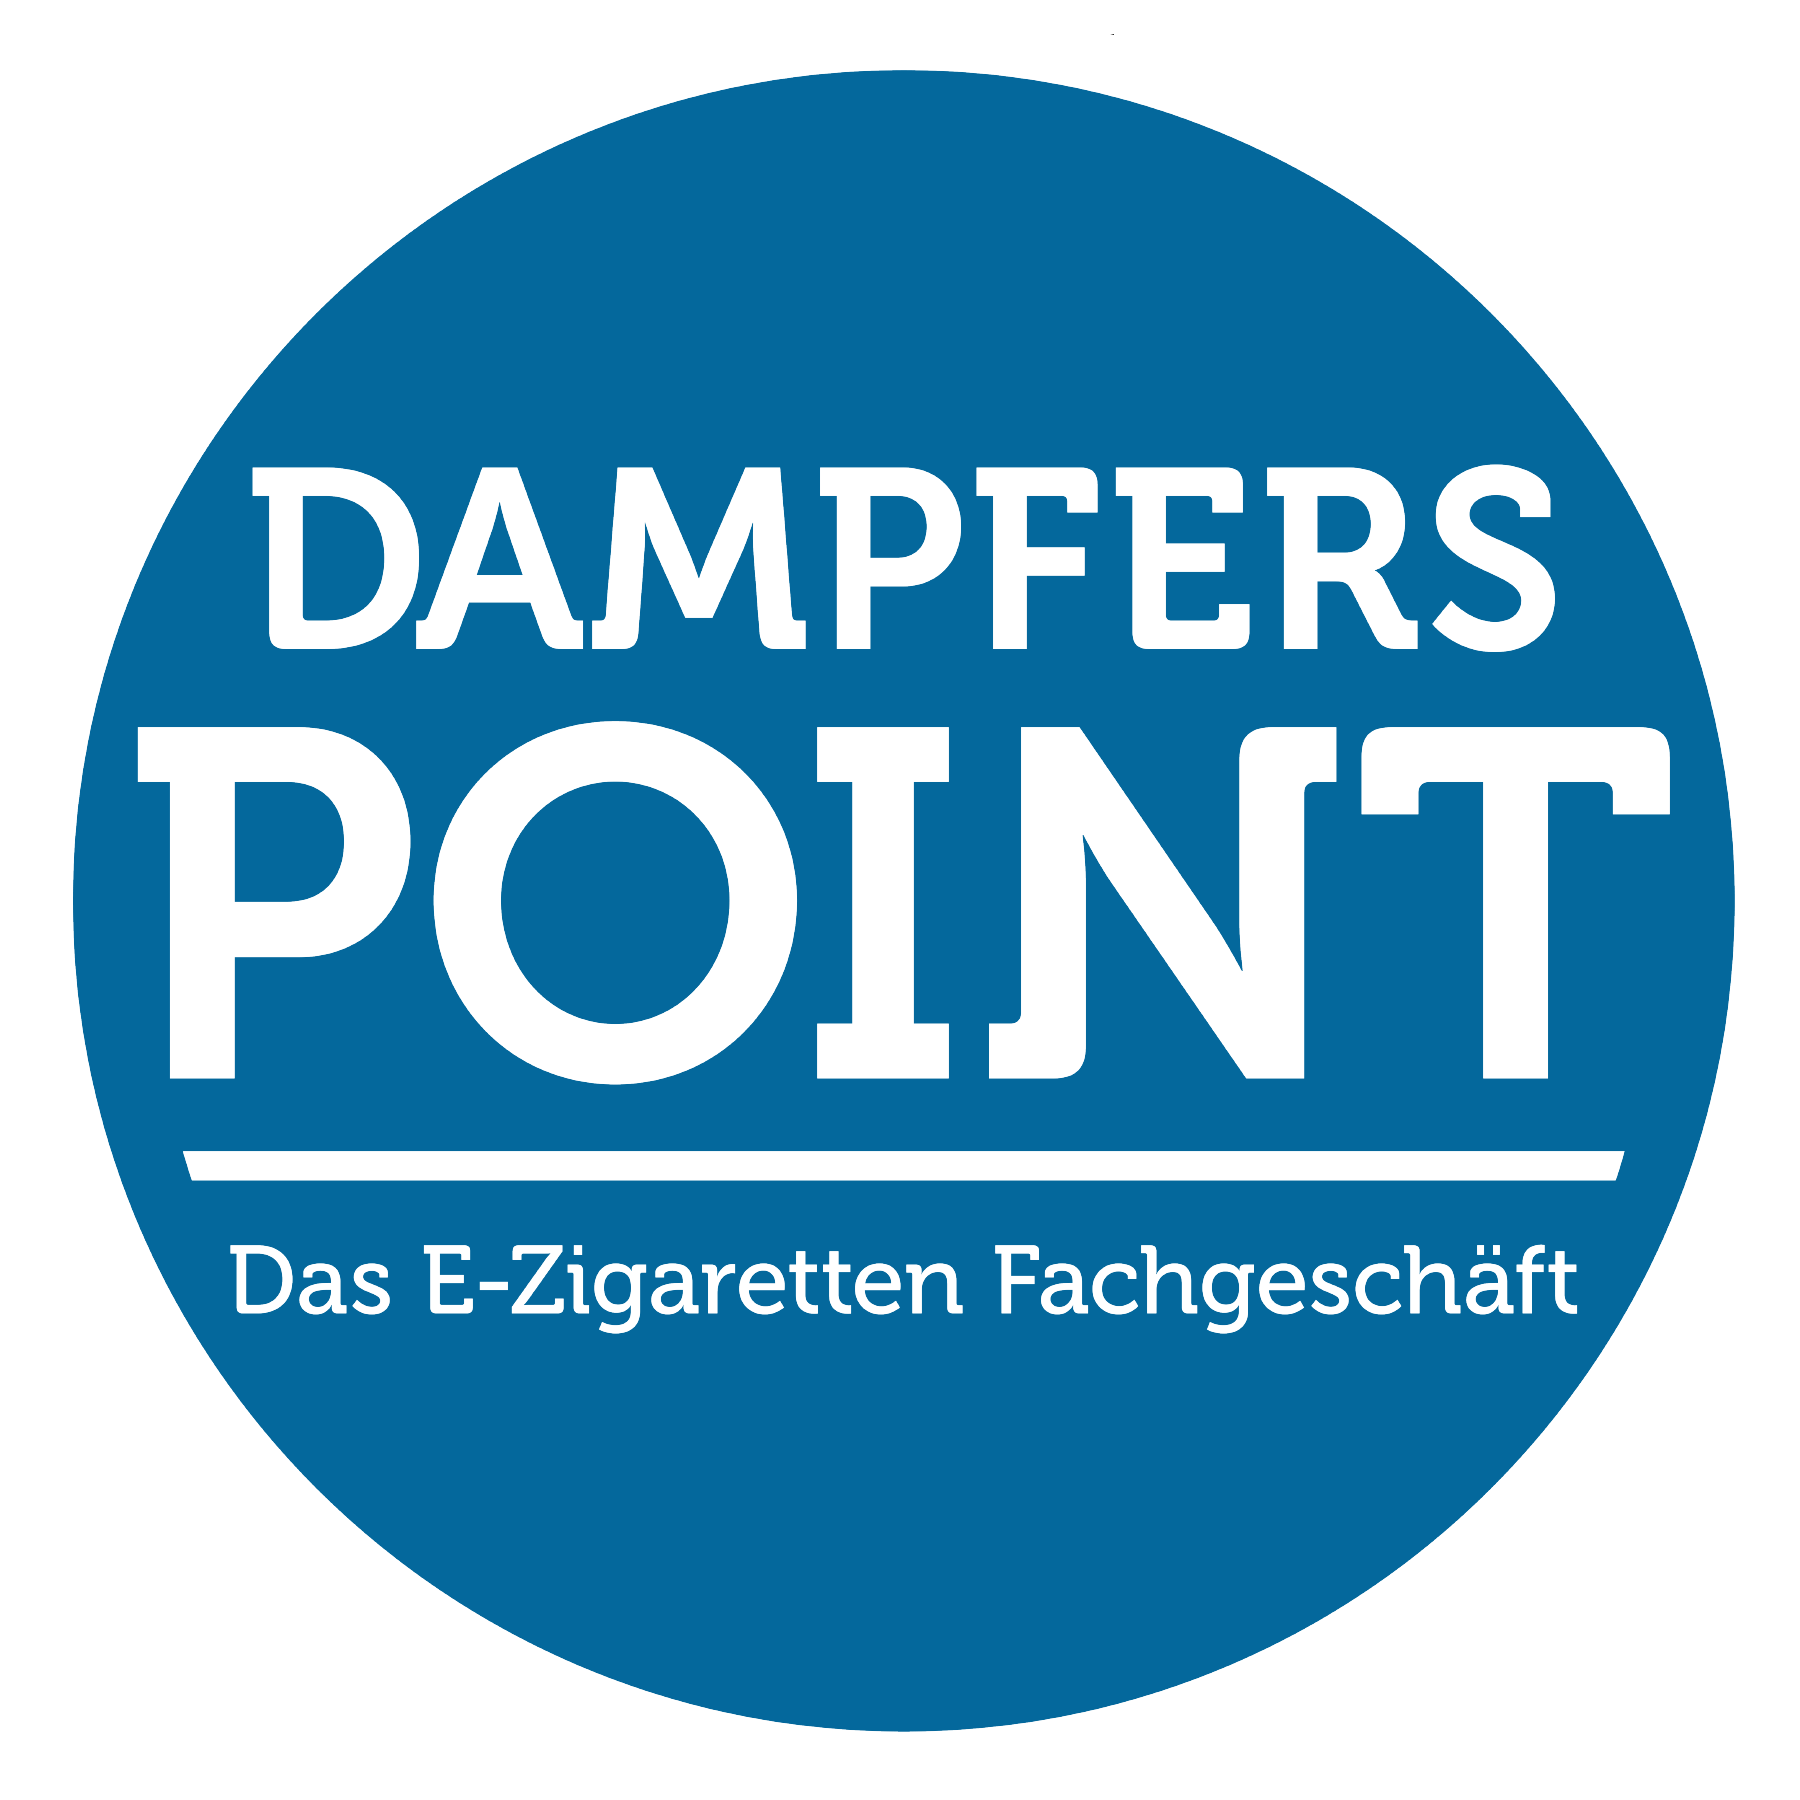 Dampferspoint in Wiesloch - Logo